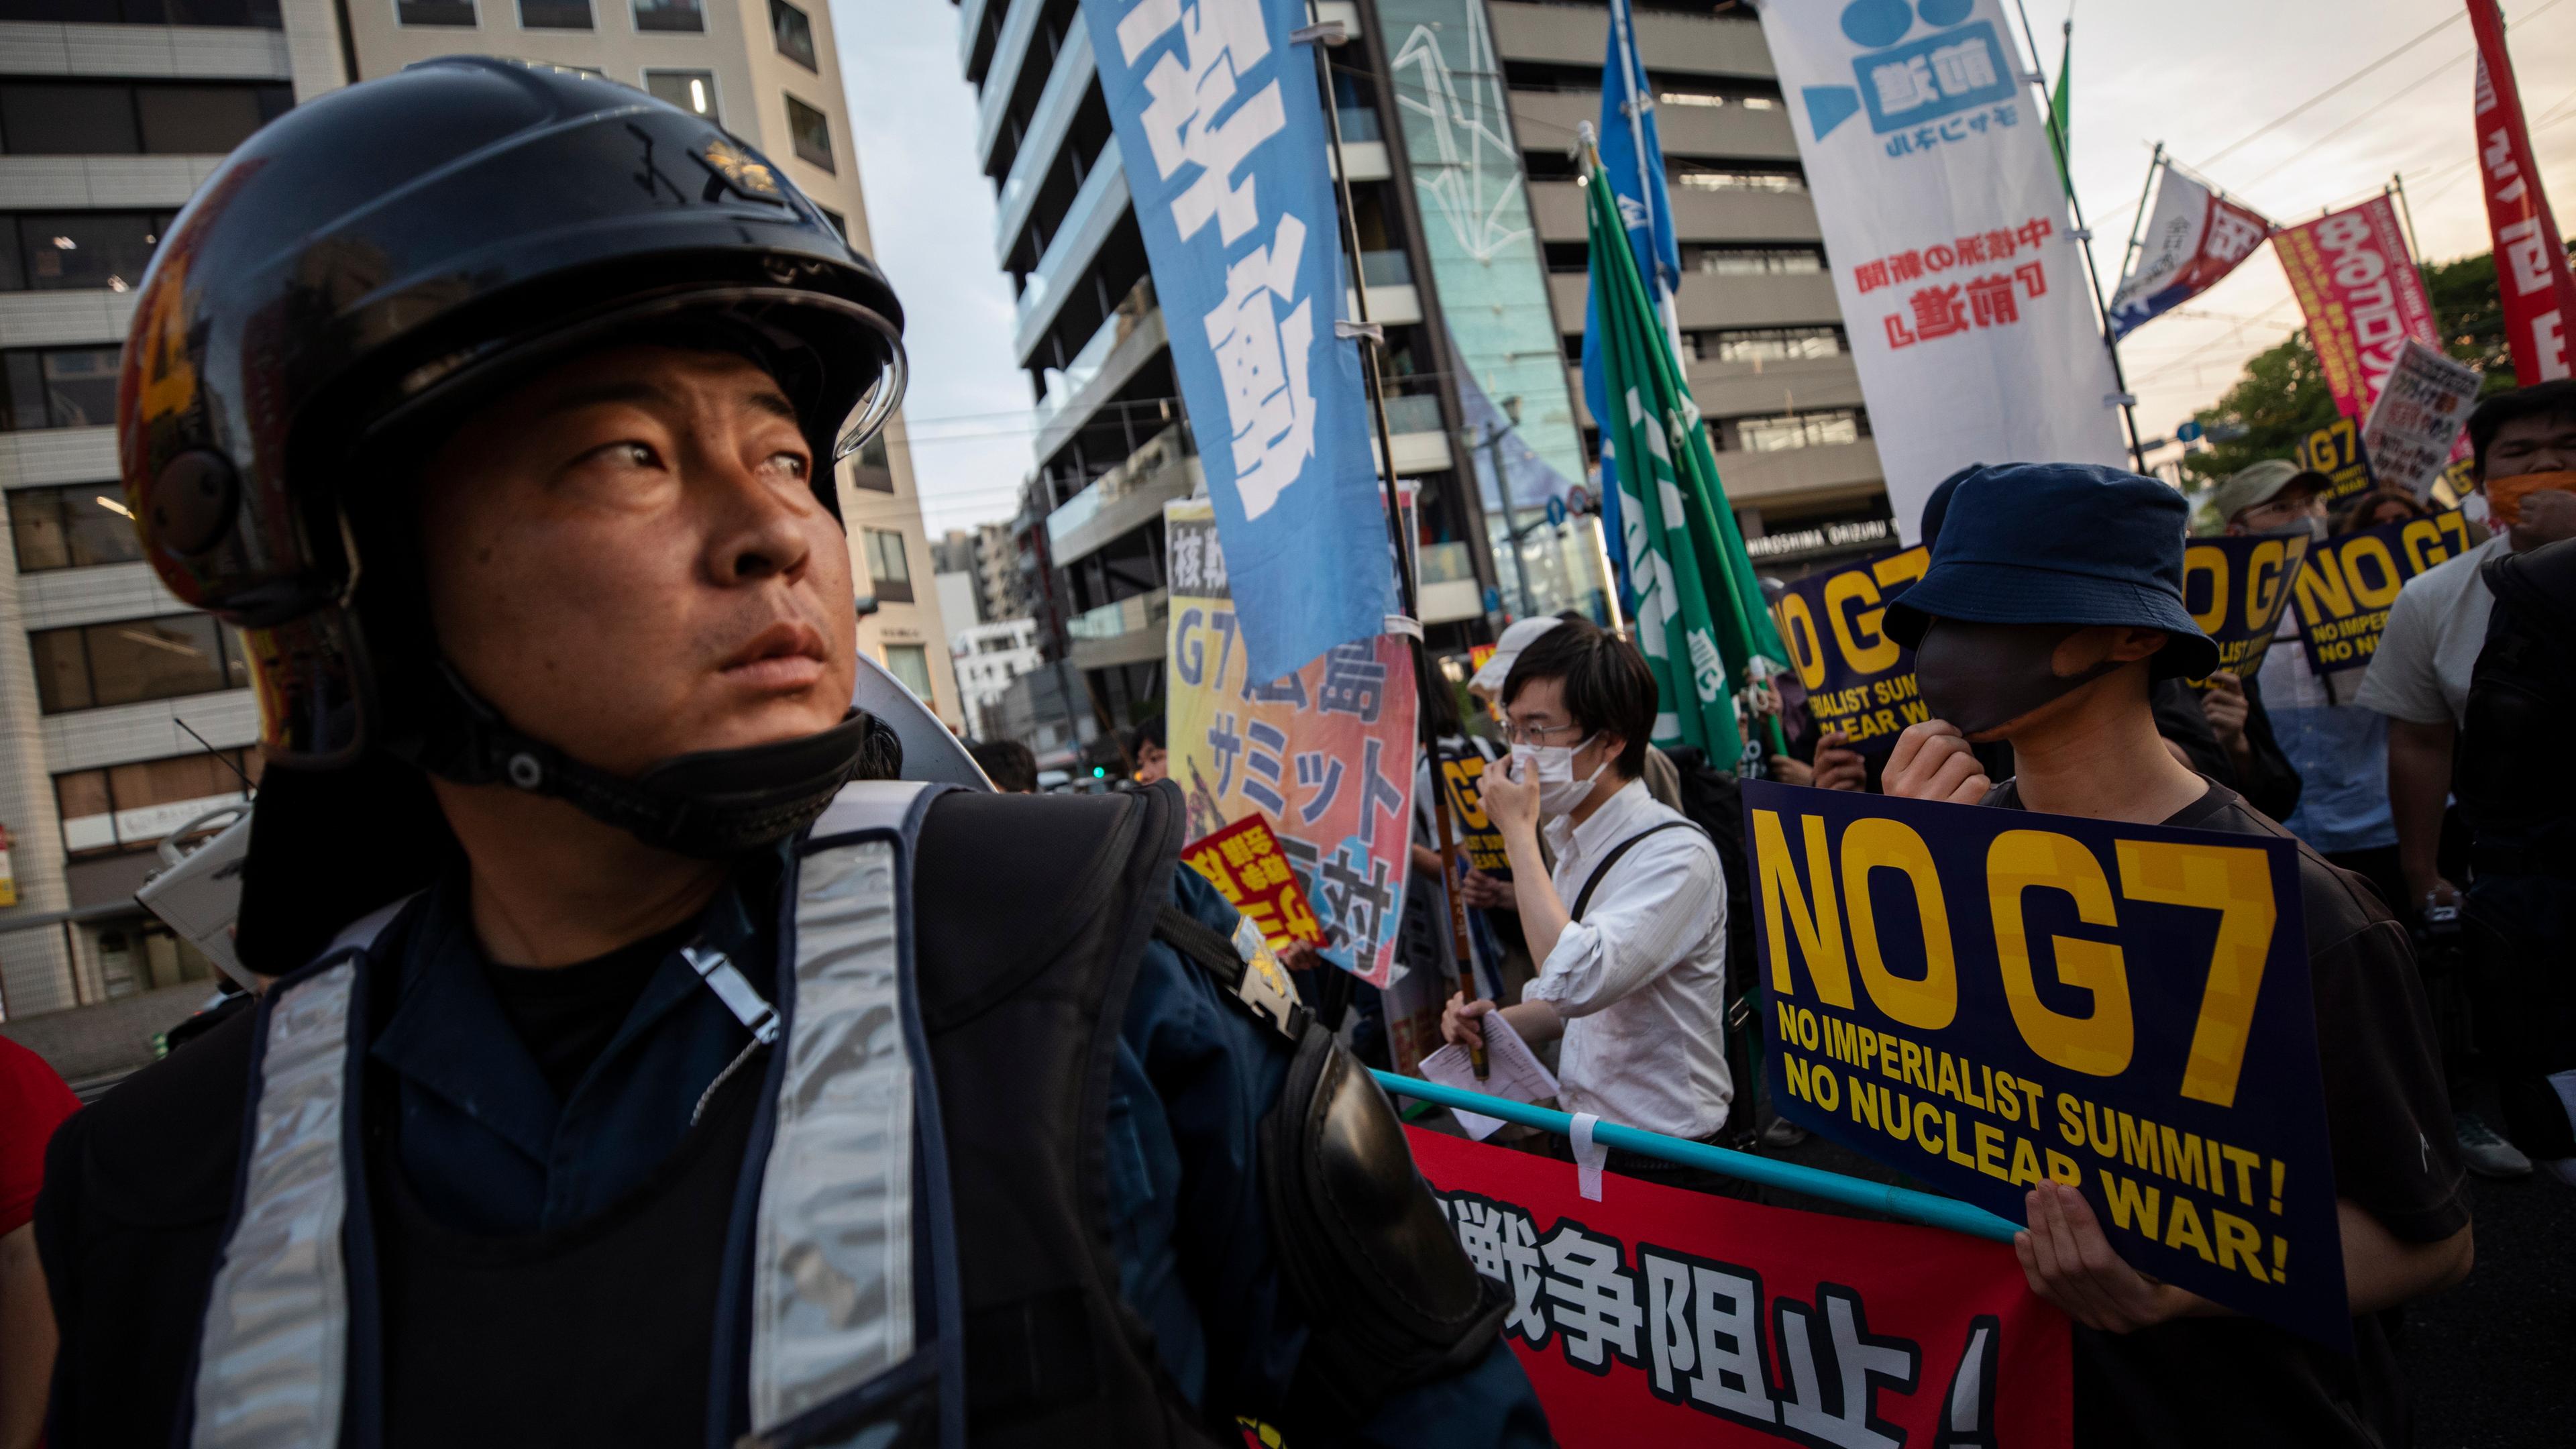 Protestierende halten Plakate auf denen "No G7" zu lesen ist in der japanischen Stadt Hiroshima.